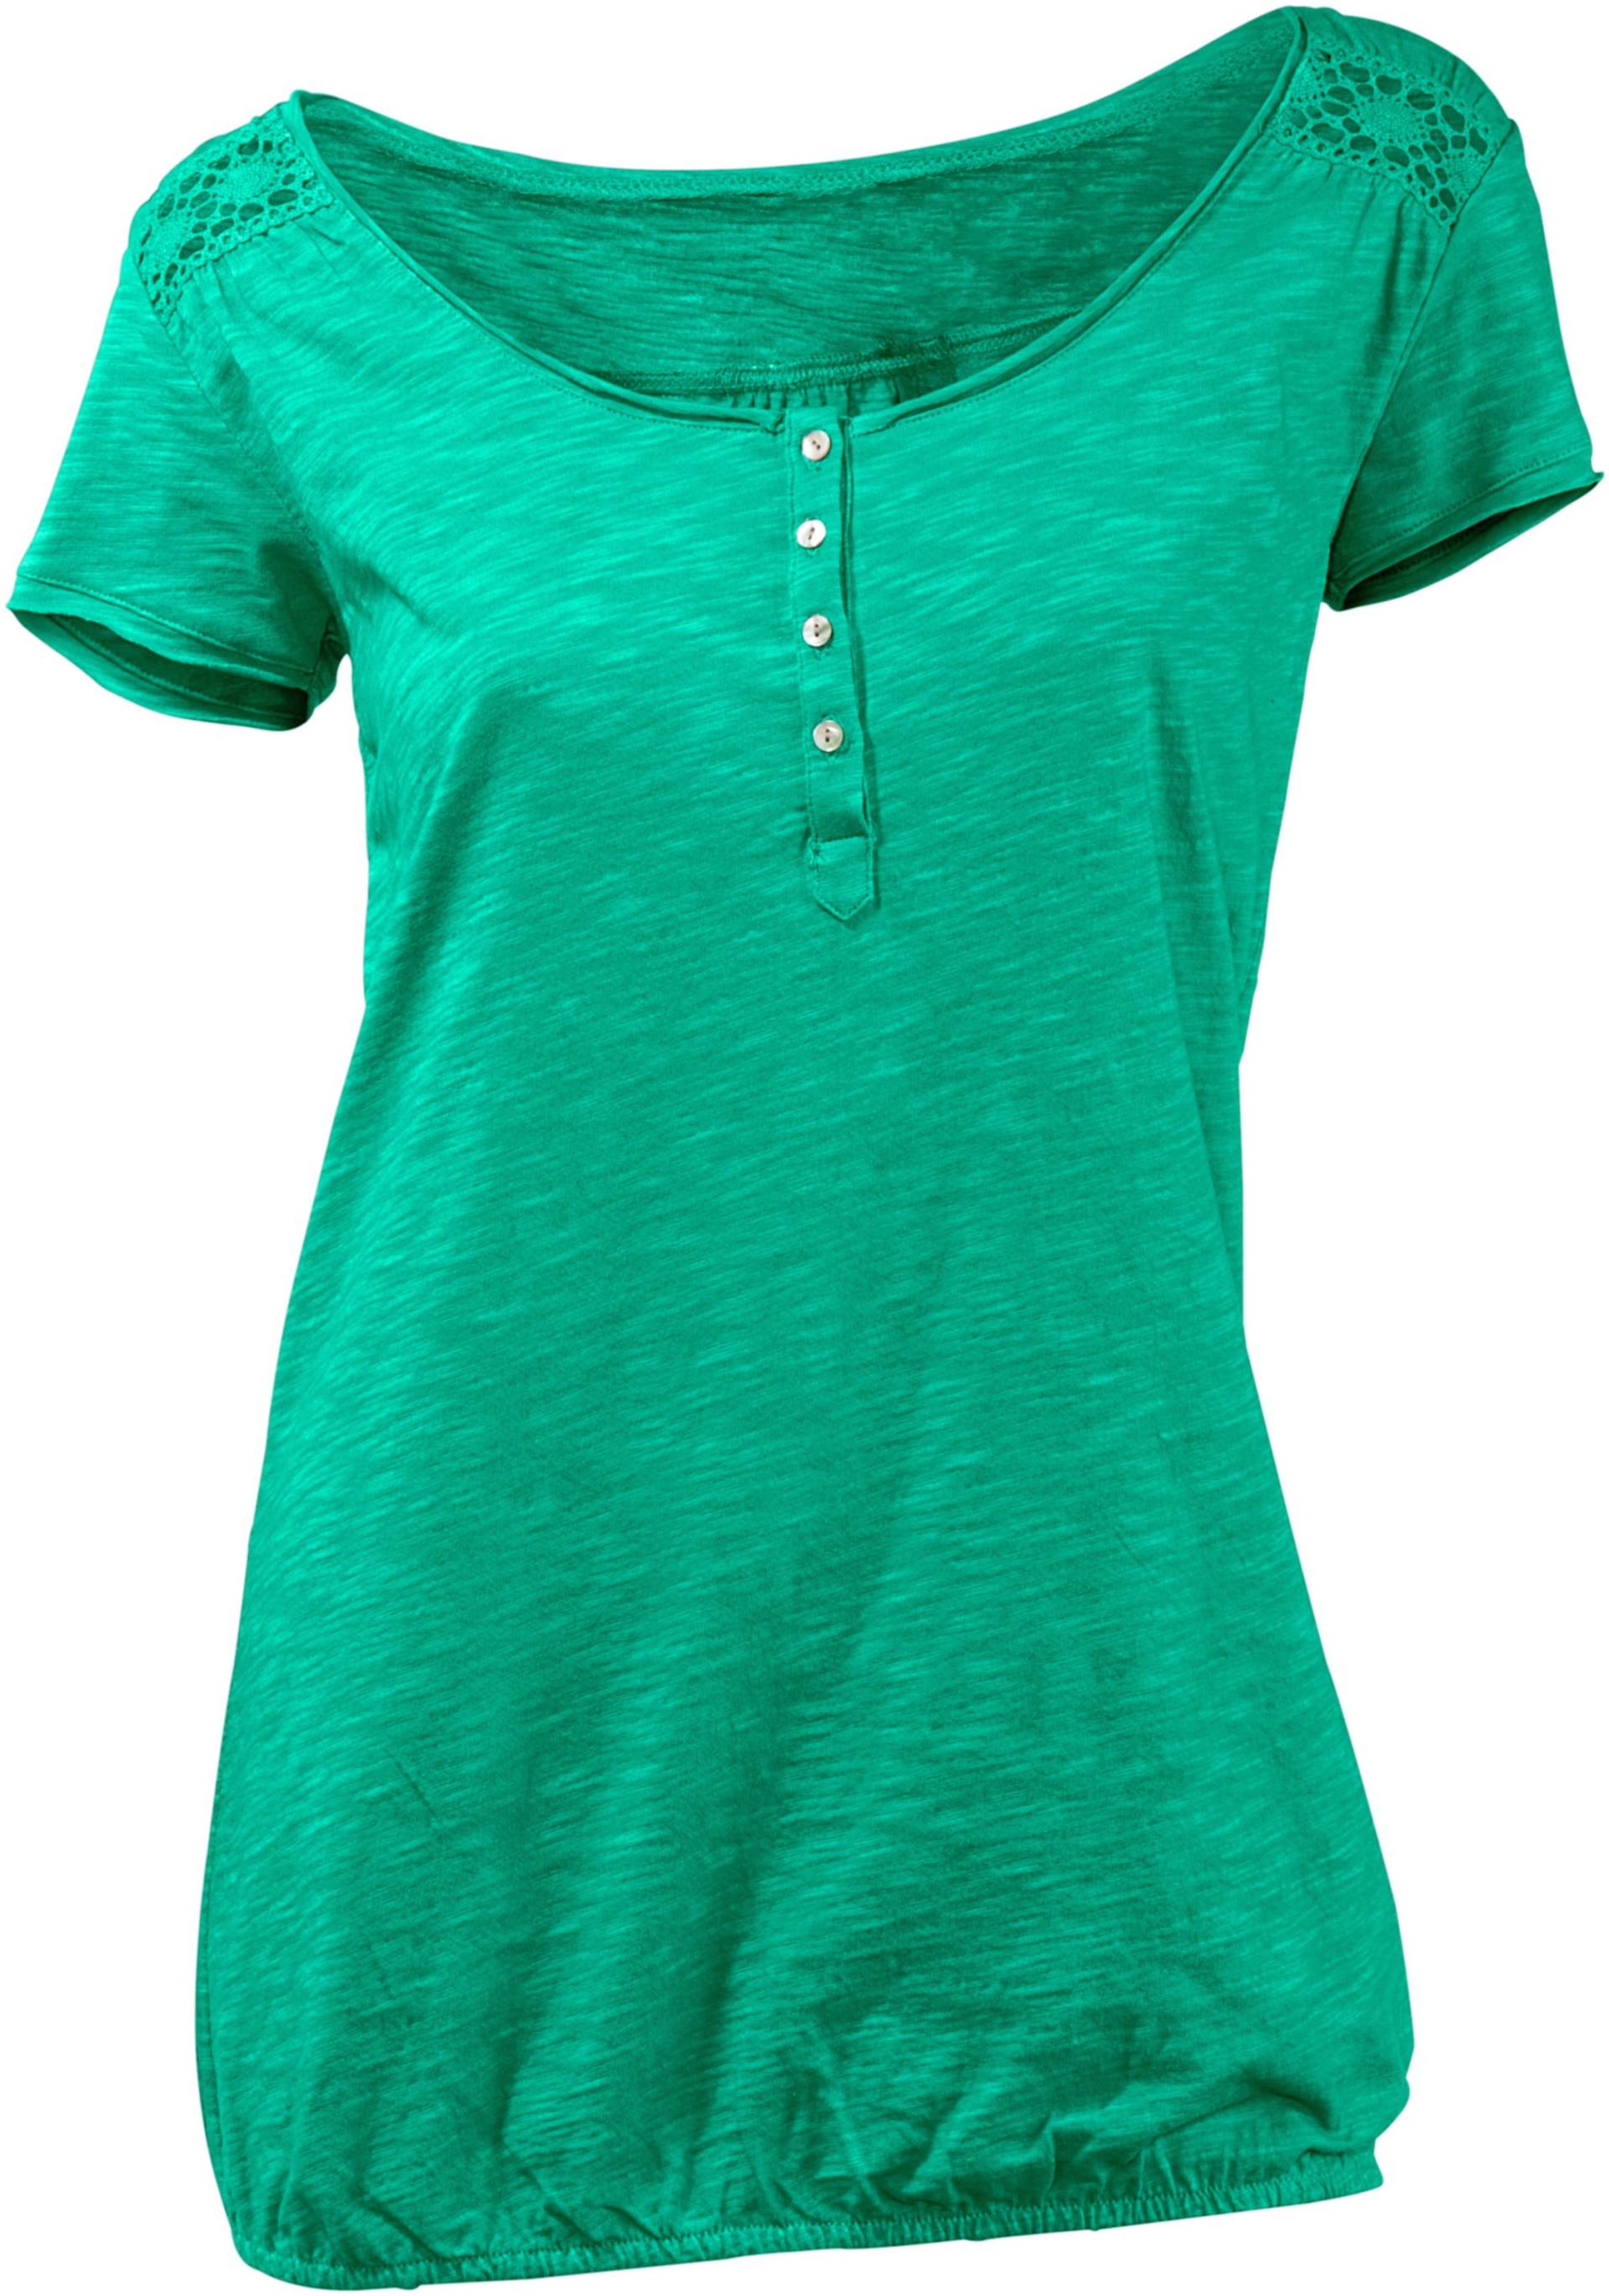 Rundhals-Shirt in grün von heine